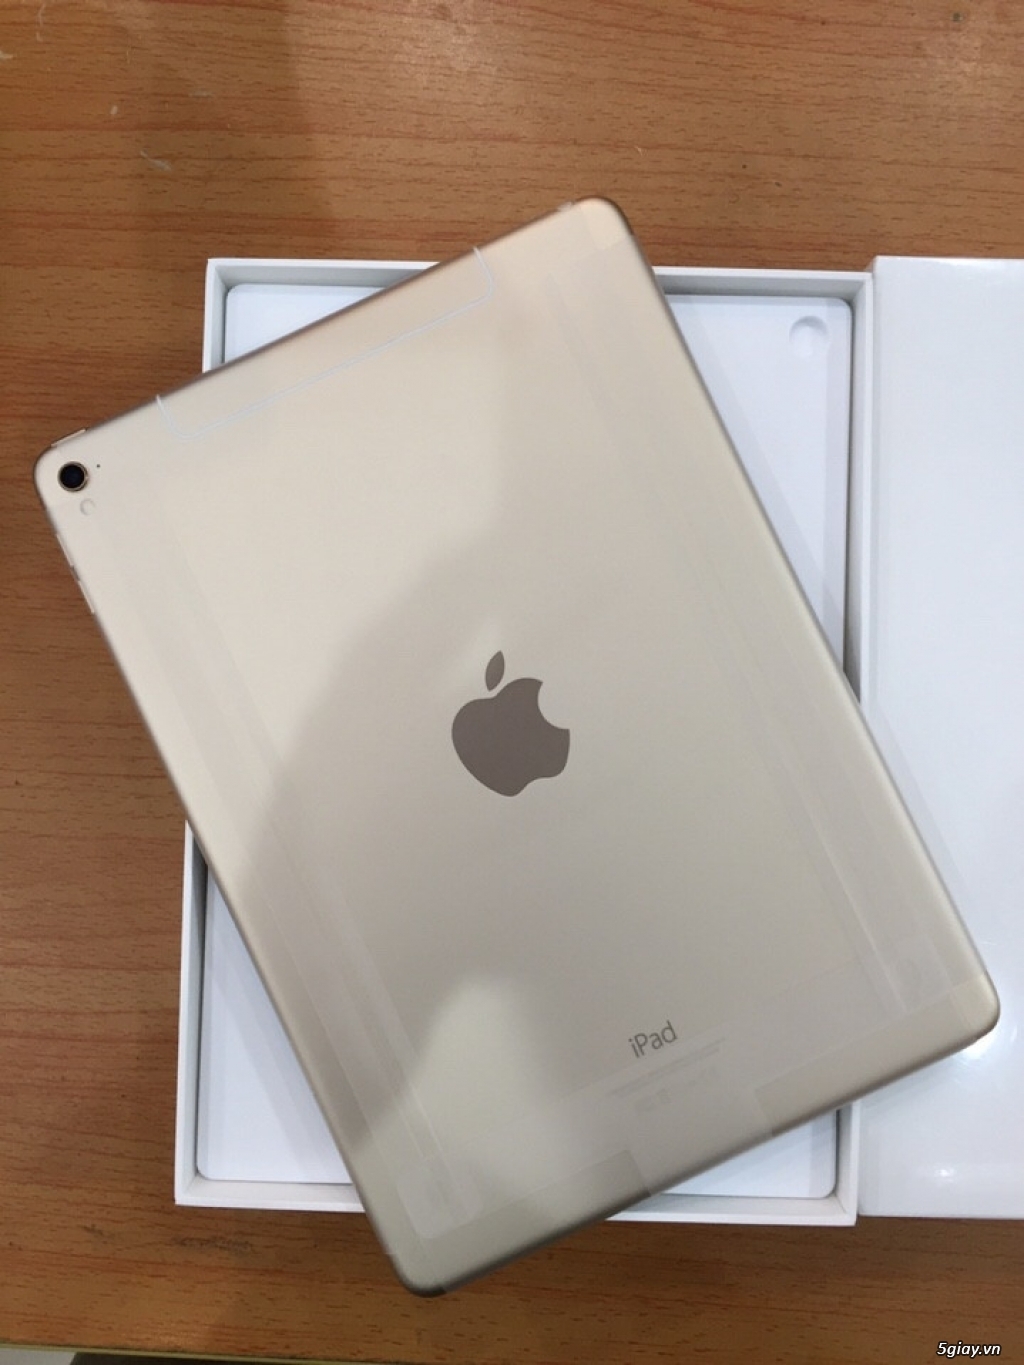 iPad Pro 9.7 128G |4G| Màu Gold BH 1 đổi 1>> FUTURE WORLD 11/6/2019 NGUYÊN SEAL MÀN HÌNH - 1